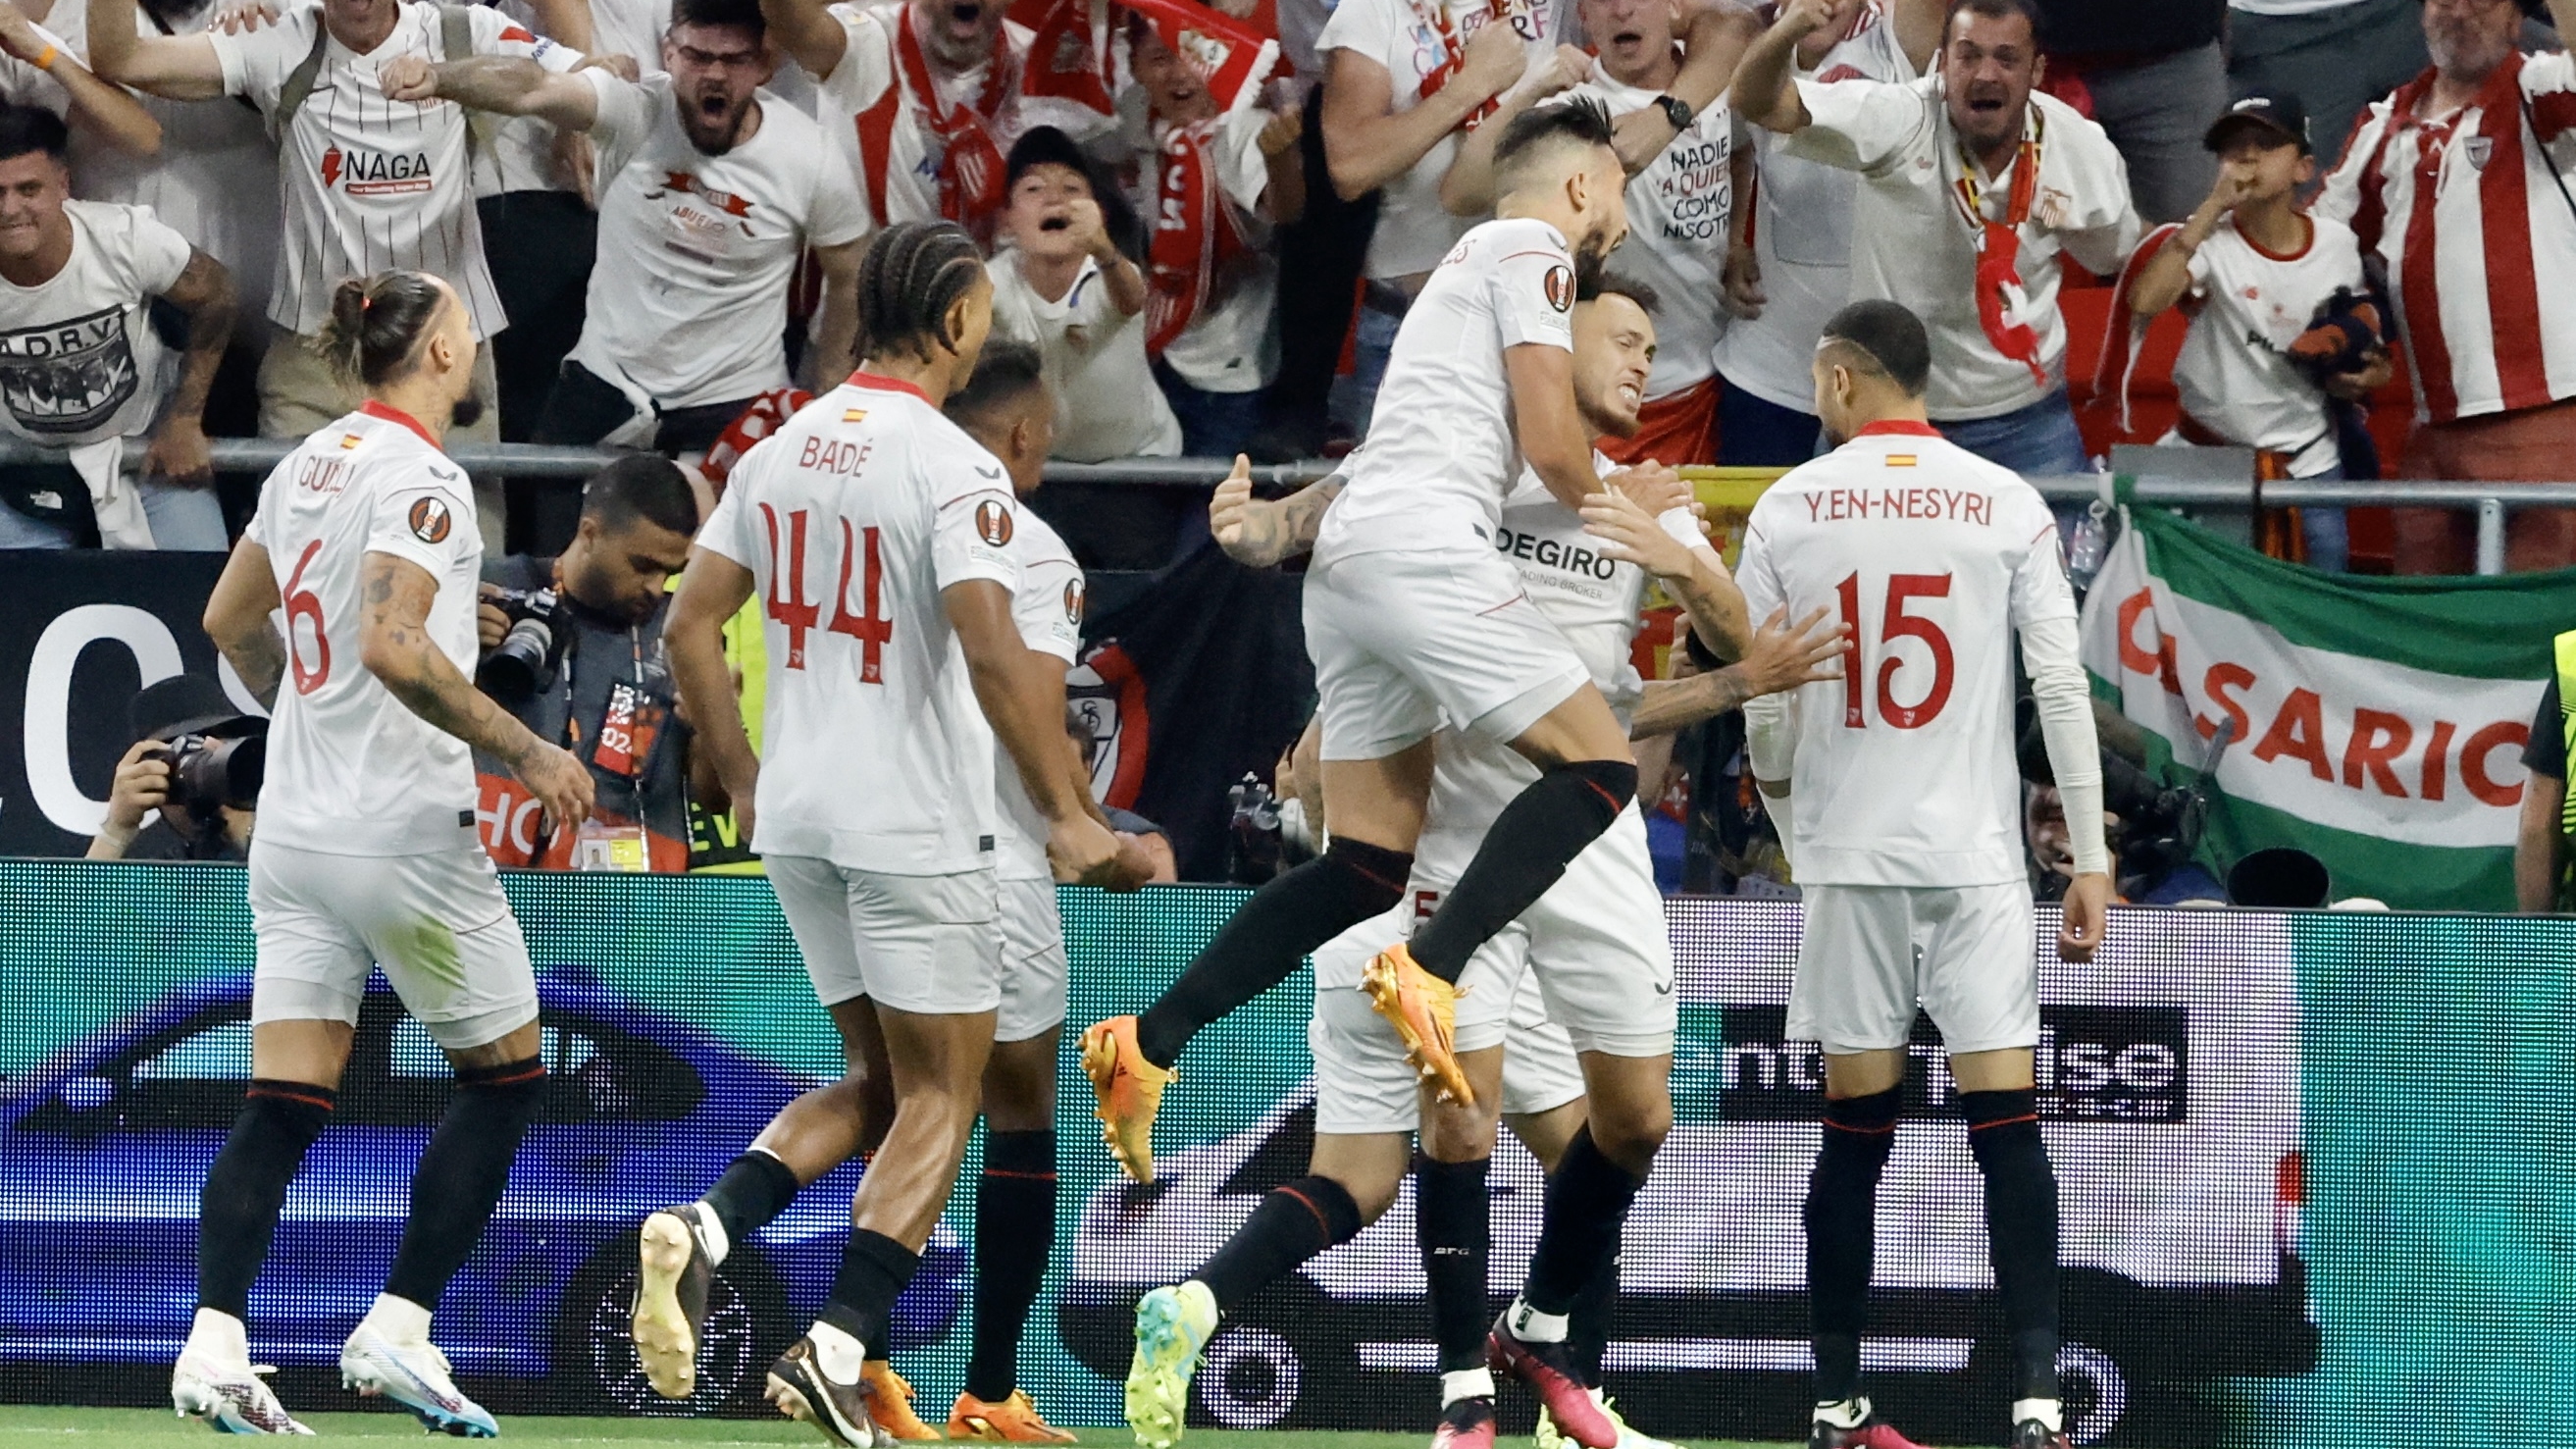 Tizenegyespárbaj után a Sevilla nyerte az AS Roma elleni Európa-liga-döntőt